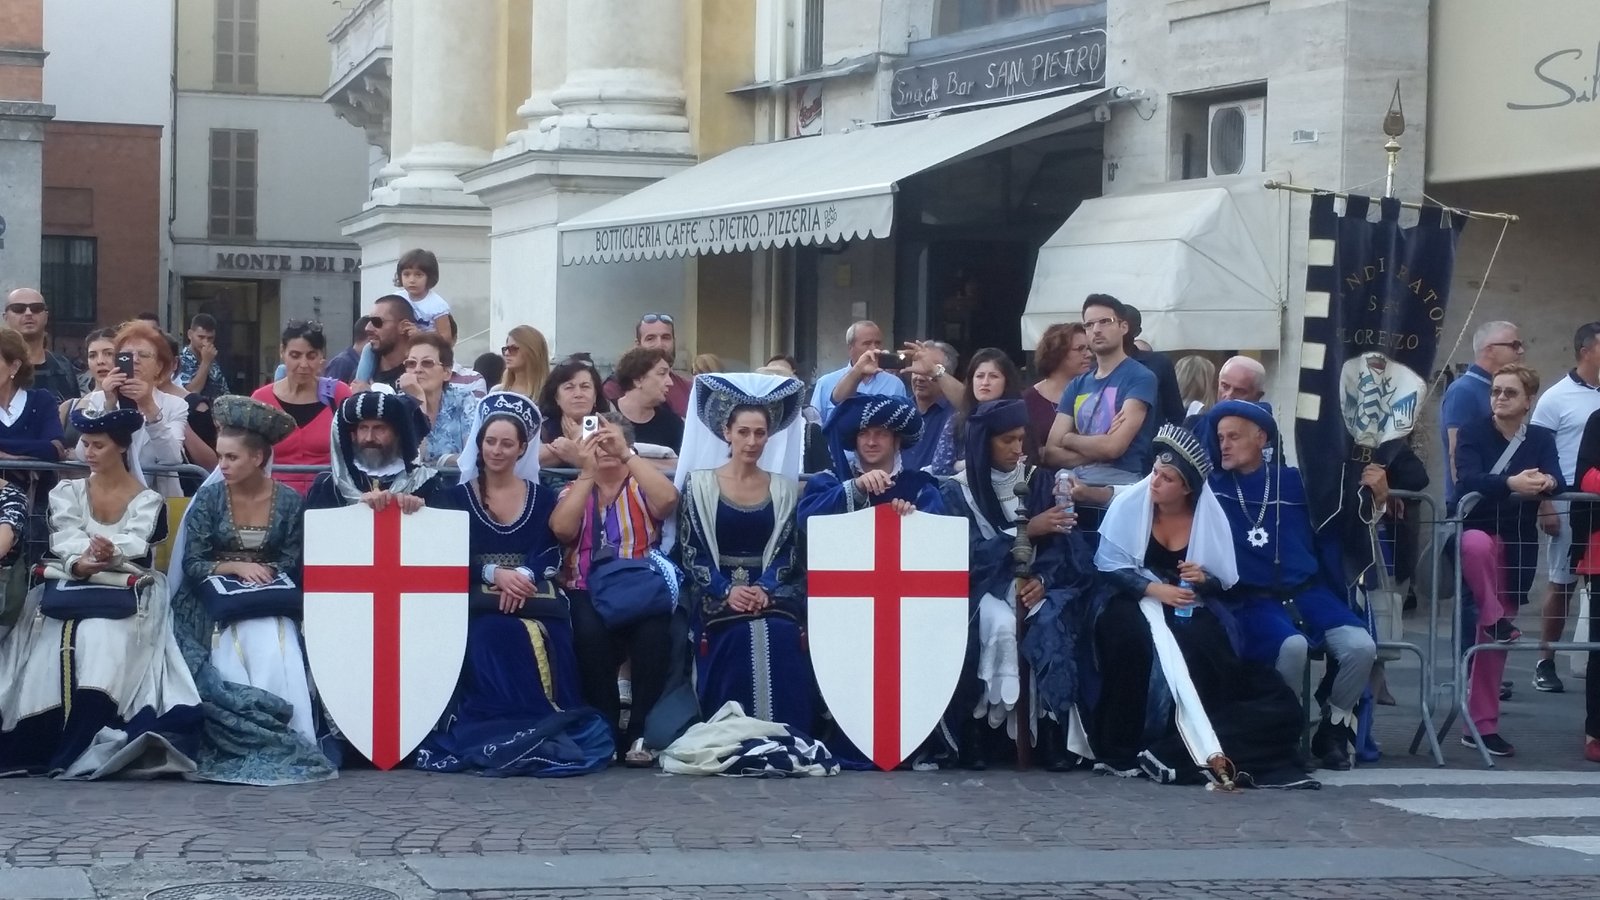 Medieval parade for Palio di Parma, Parma, Italy